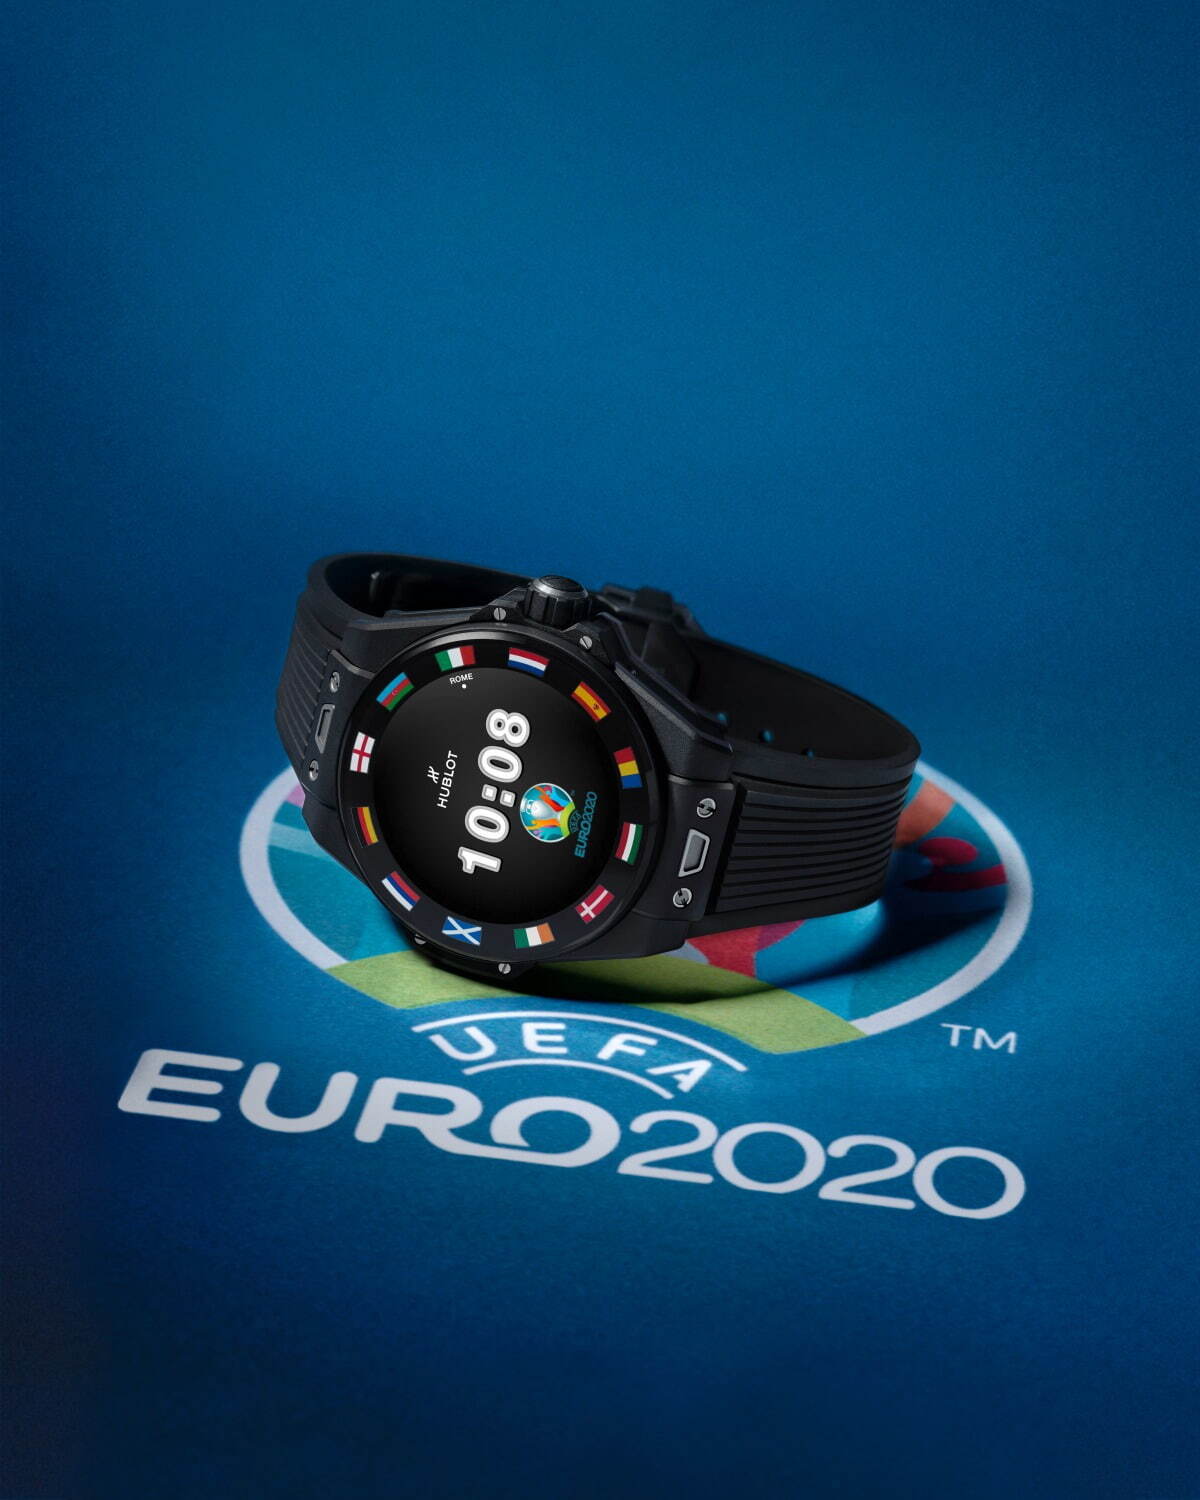 ビッグ・バン e UEFA EURO 2020
682,000円(税込)